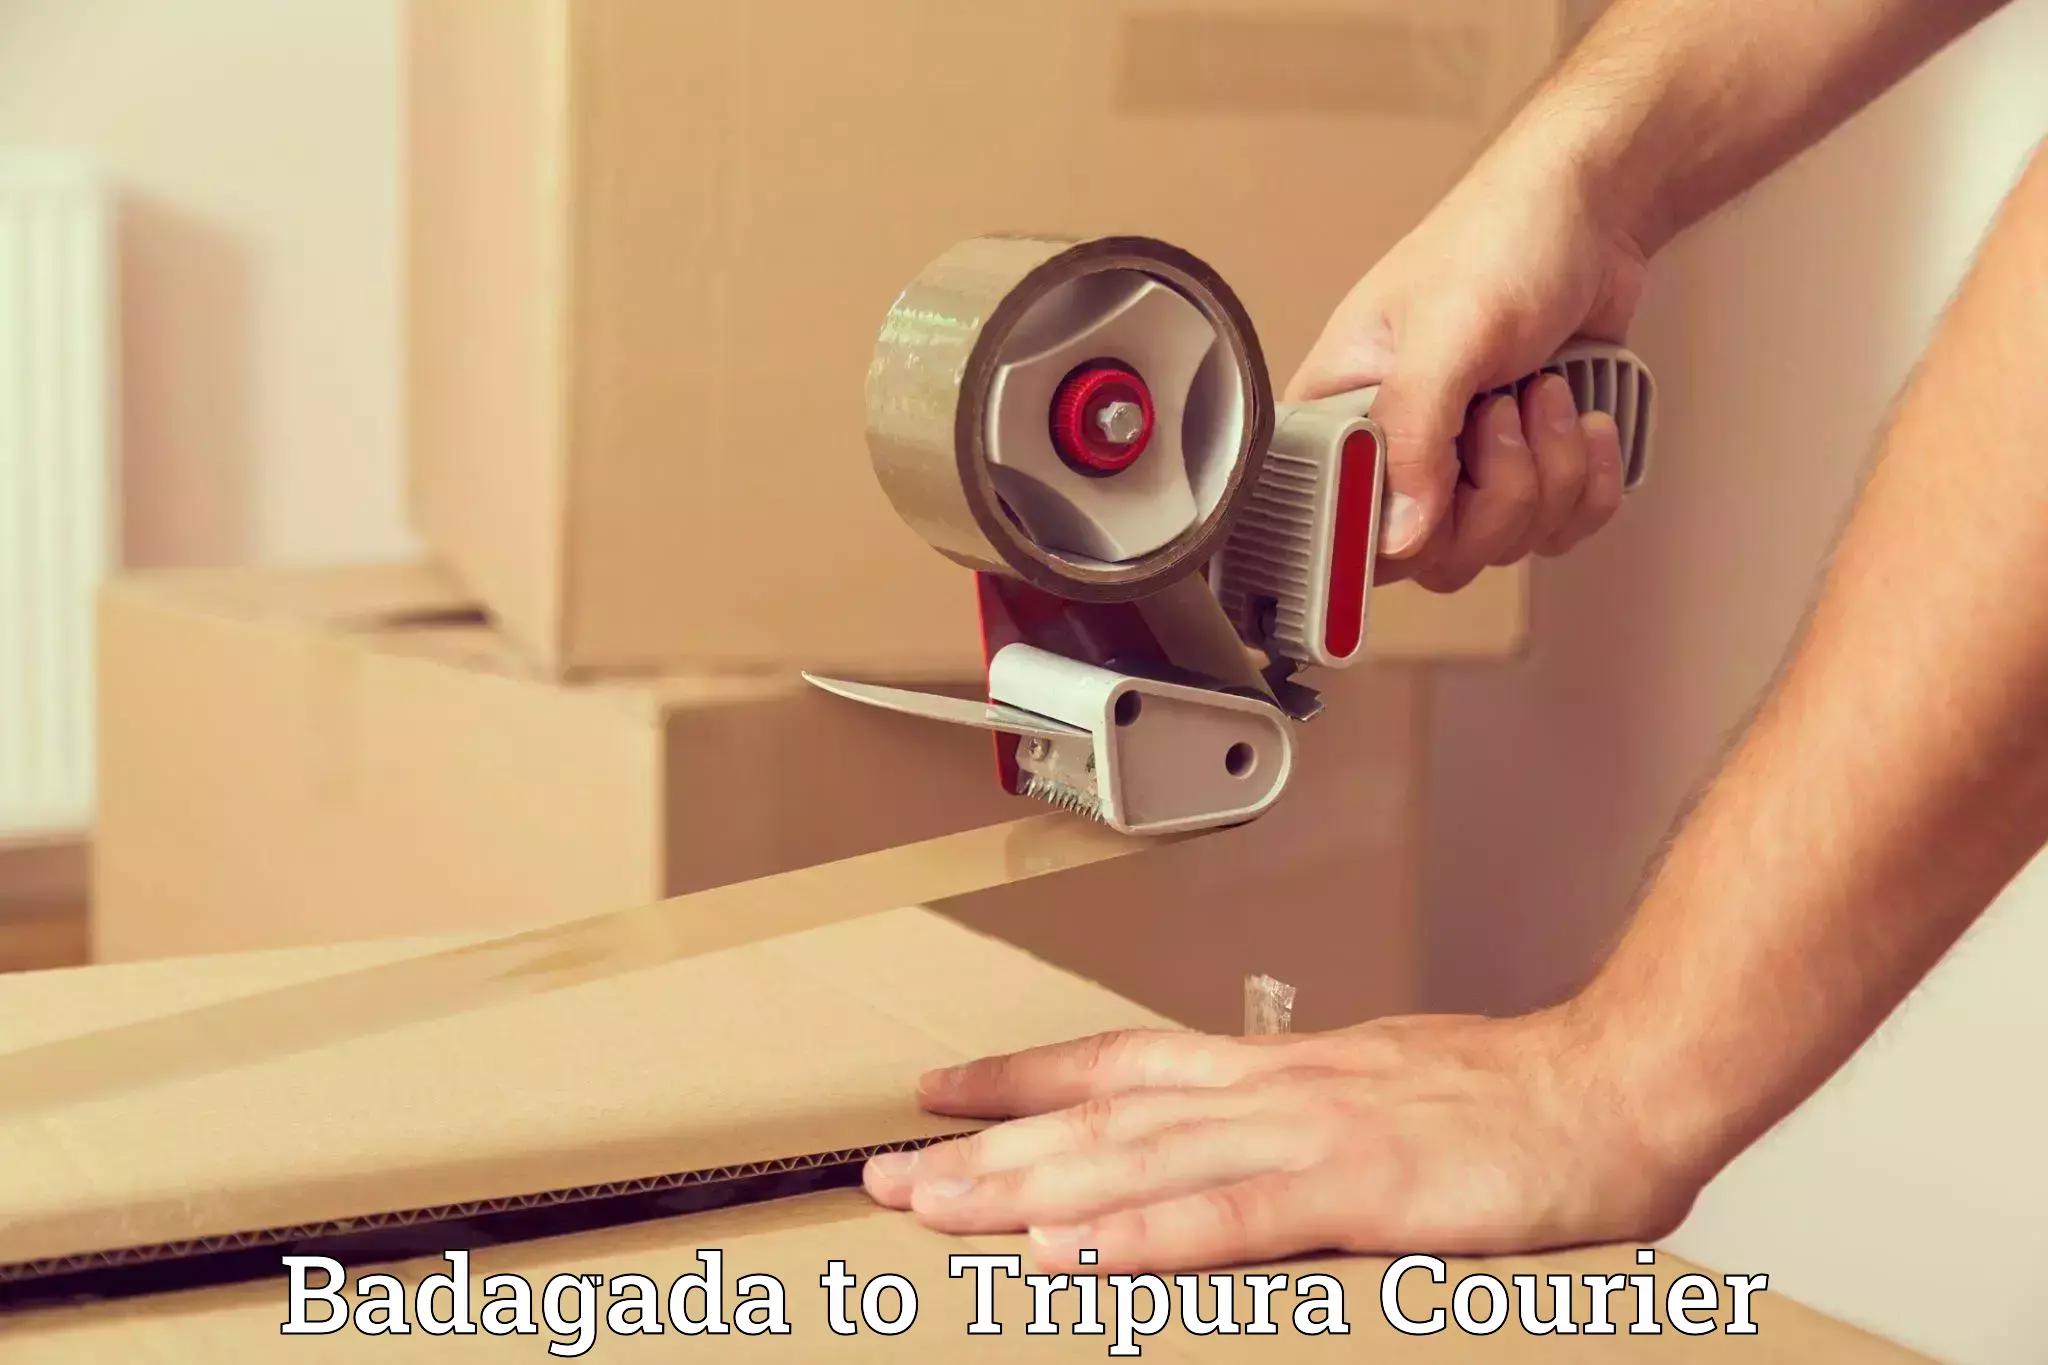 Furniture transport professionals Badagada to Udaipur Tripura